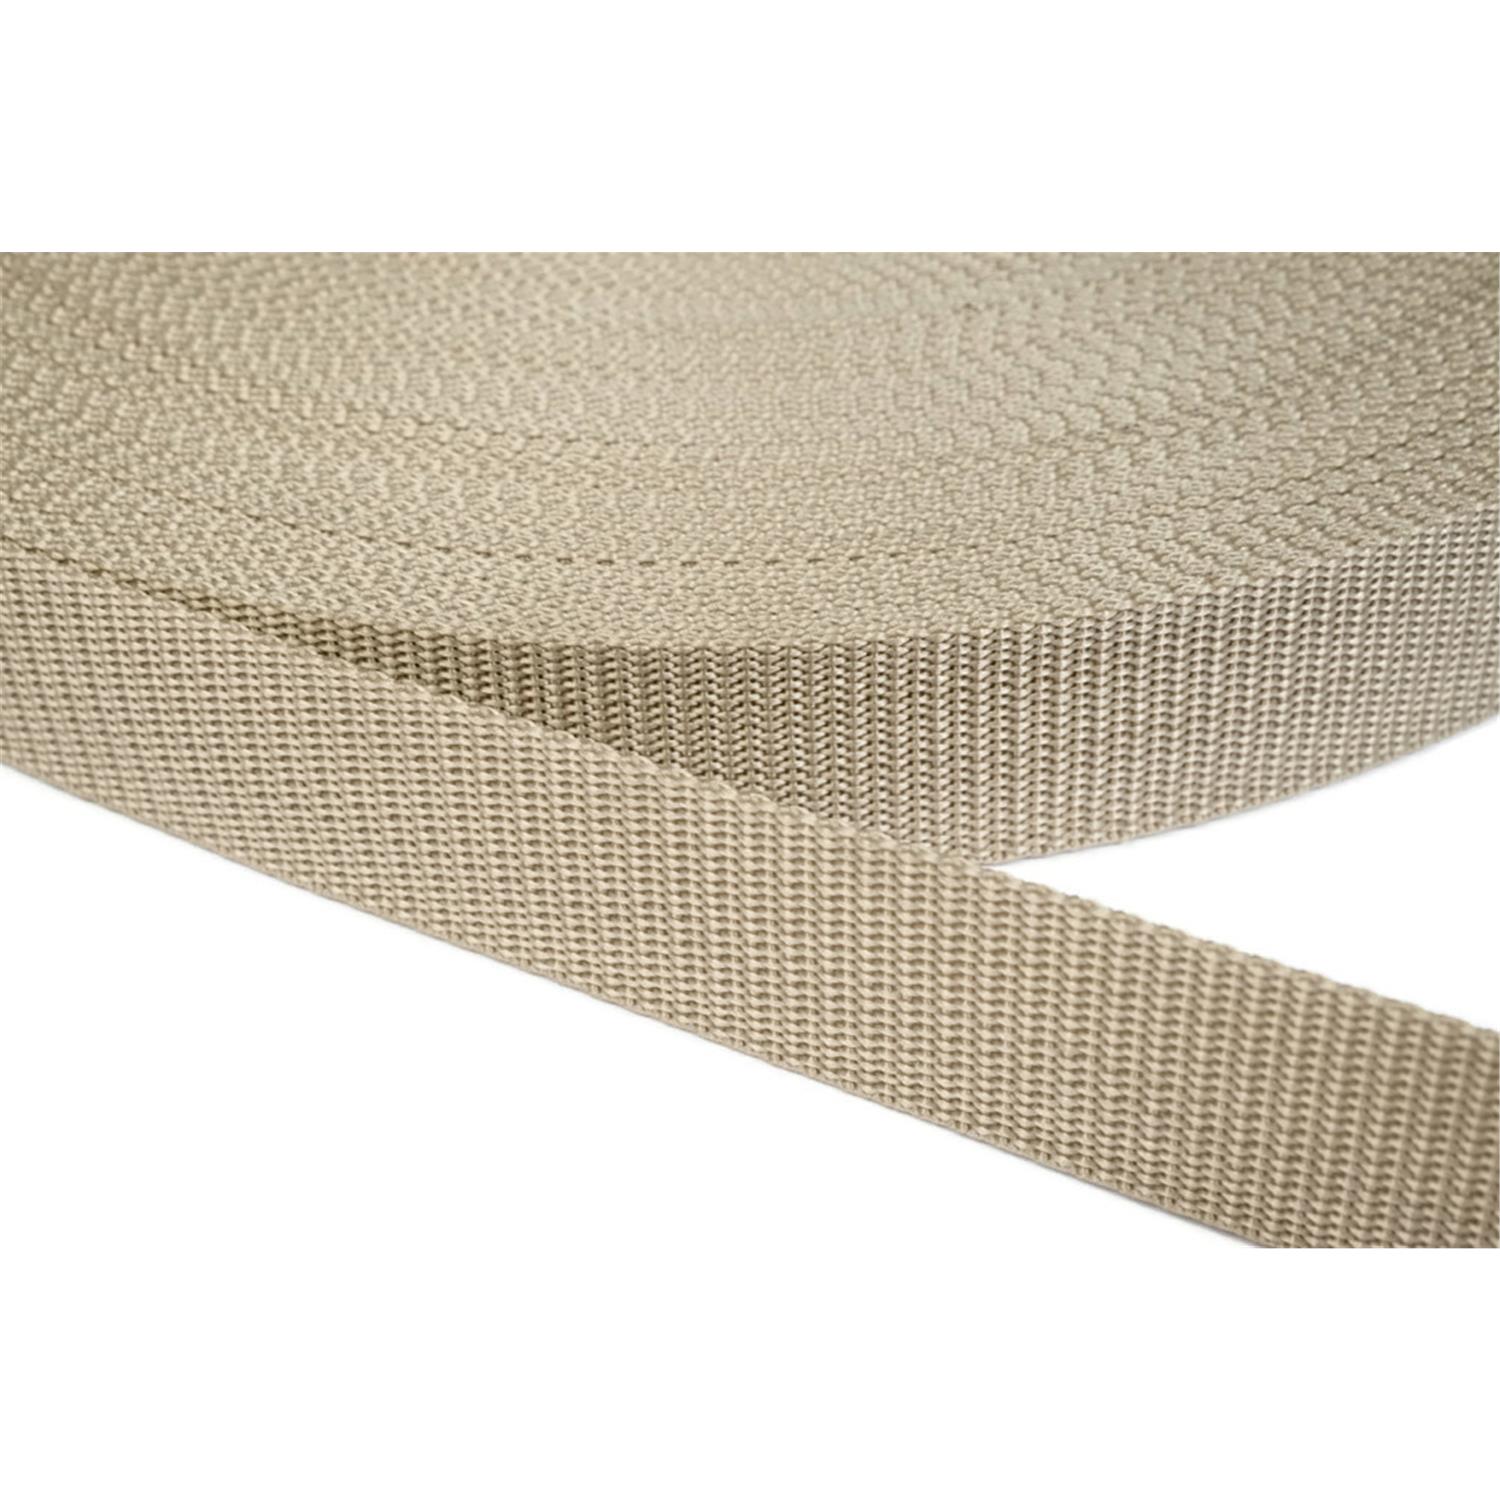 Gurtband 25mm breit aus Polypropylen in 41 Farben 03 - beige 50 Meter